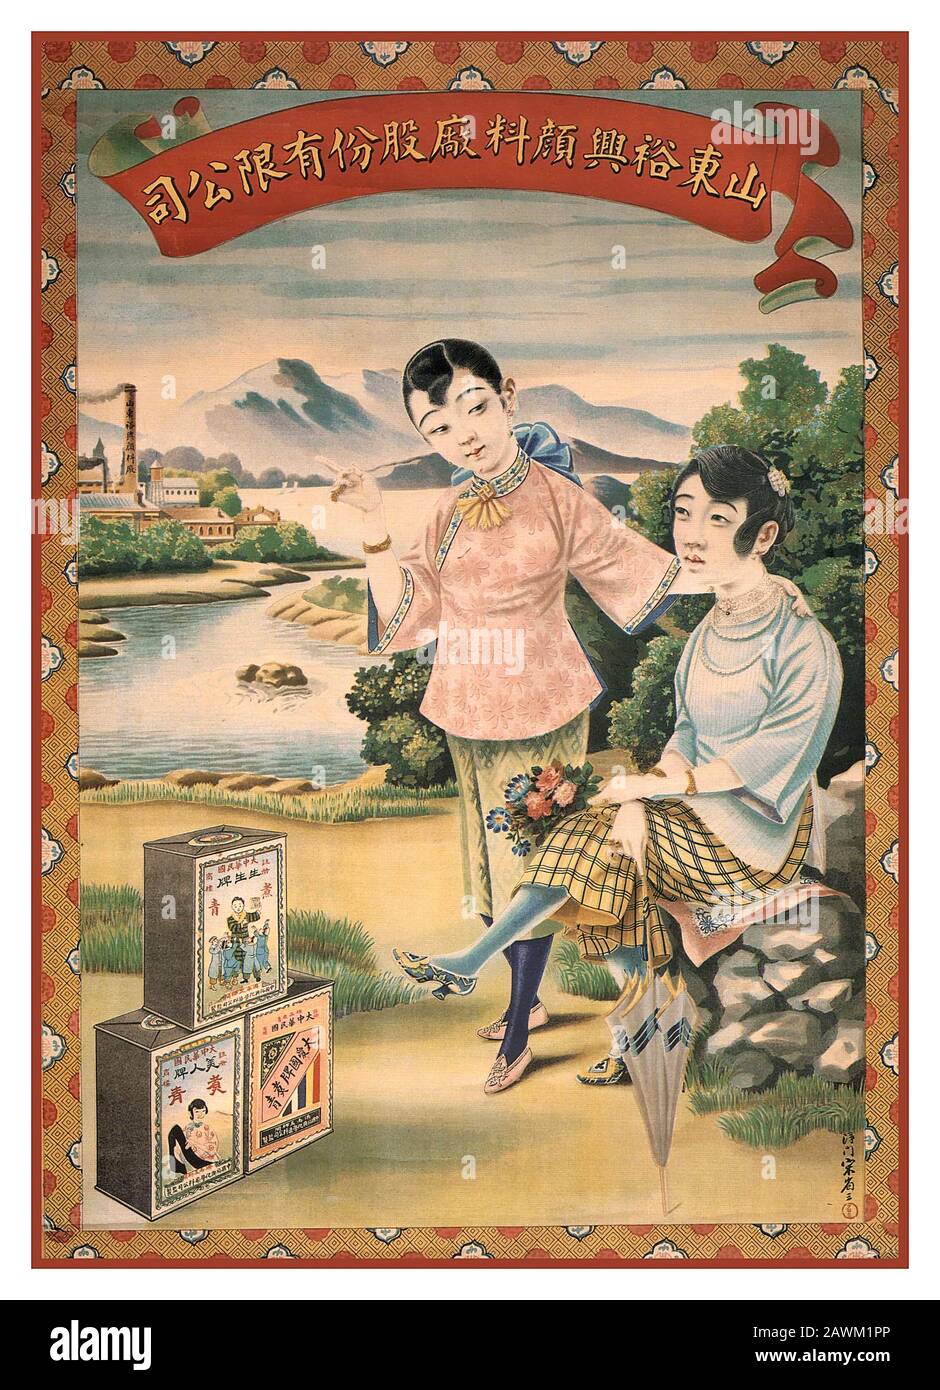 Póster chino vintage de Shanghái Arte publicitario chino de la fábrica Yu Xing Dye de la provincia de Shandong. Carteles Chinos De Shanghai. Foto de stock